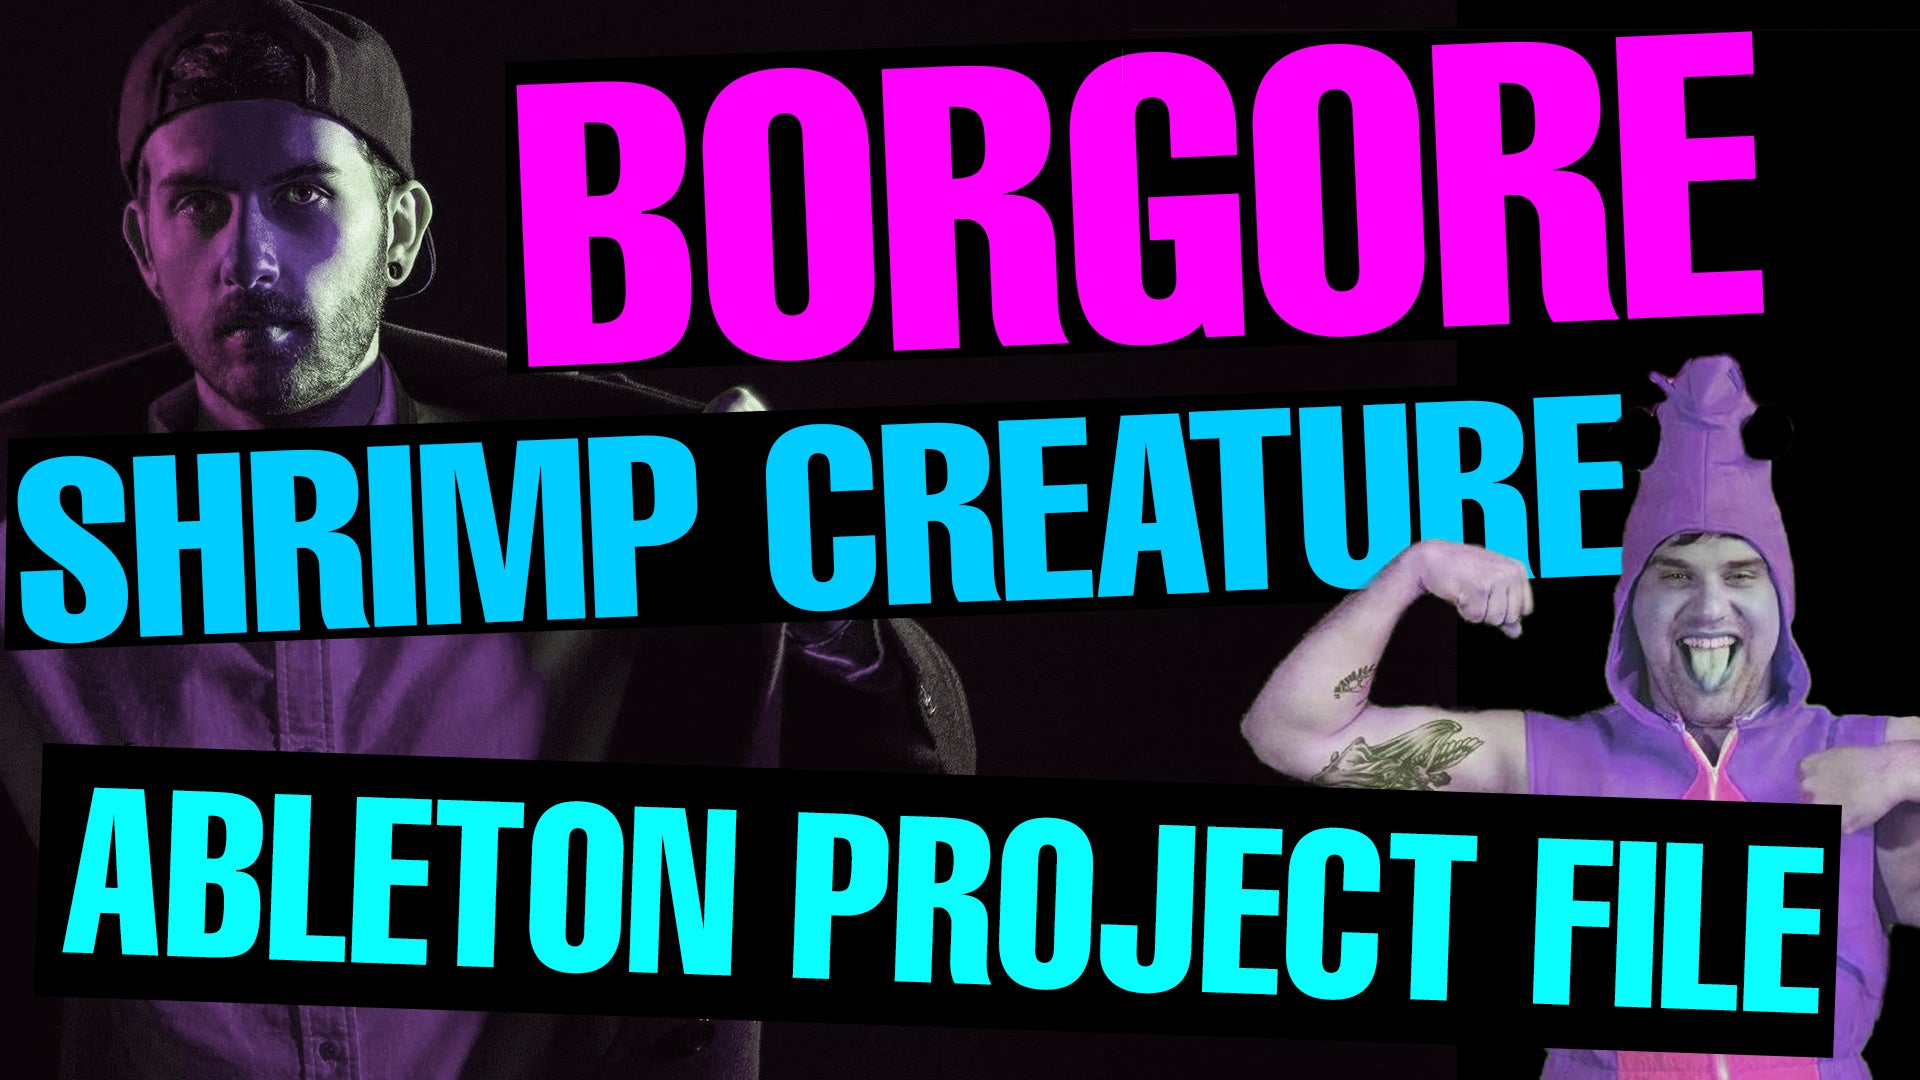 Borgore - Shrimp Creature ft Nick Colletti Project File